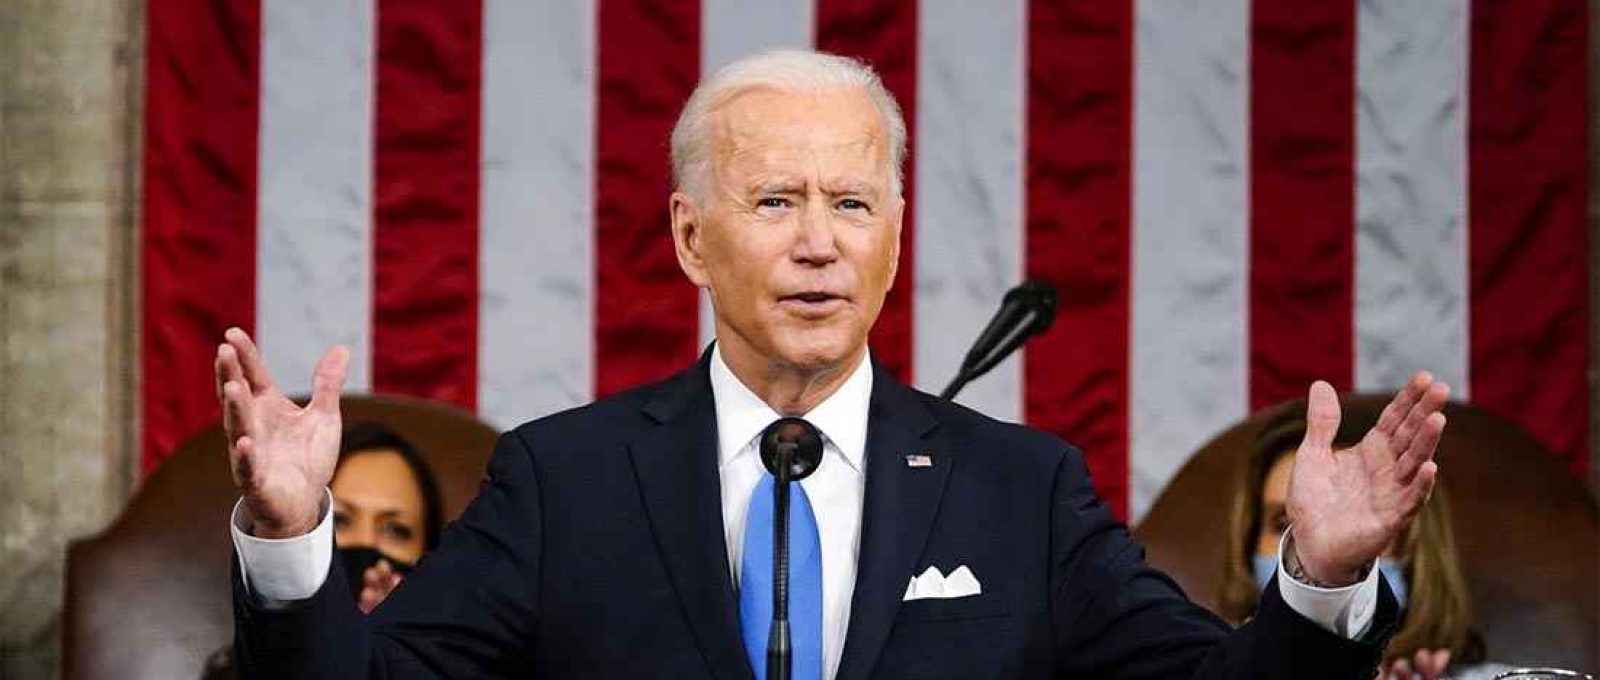 O presidente dos EUA, Joe Biden, discursa em sessão conjunta do Congresso americano em 28 de abril de 2021 (Foto: Associated Press).